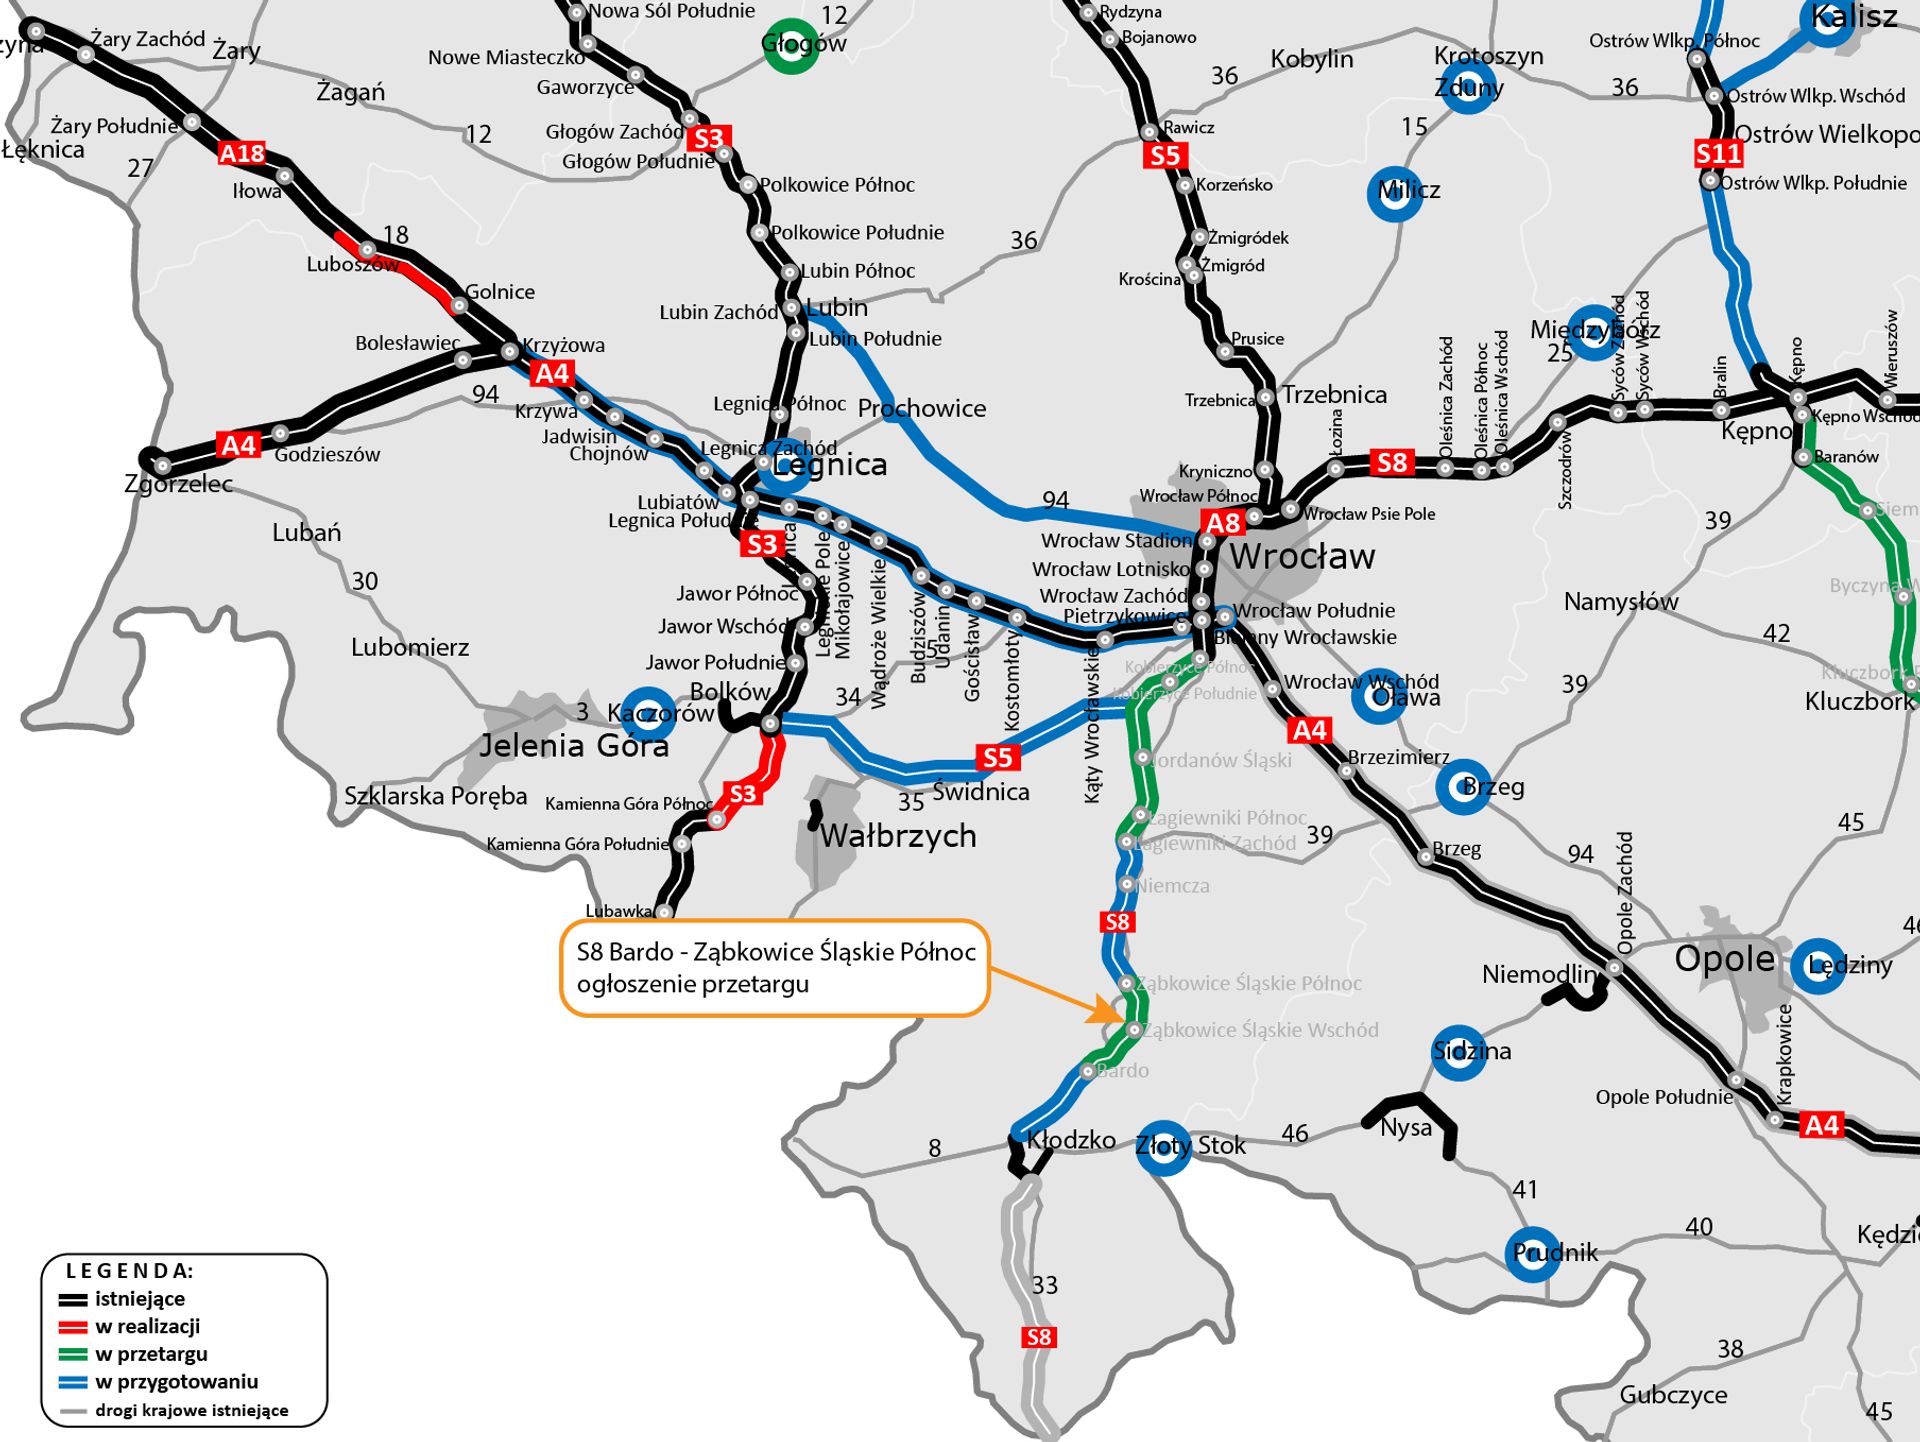 Rusza przetarg na kolejny dolnośląski odcinek drogi ekspresowej S8 od Ząbkowic Śląskich do Barda 